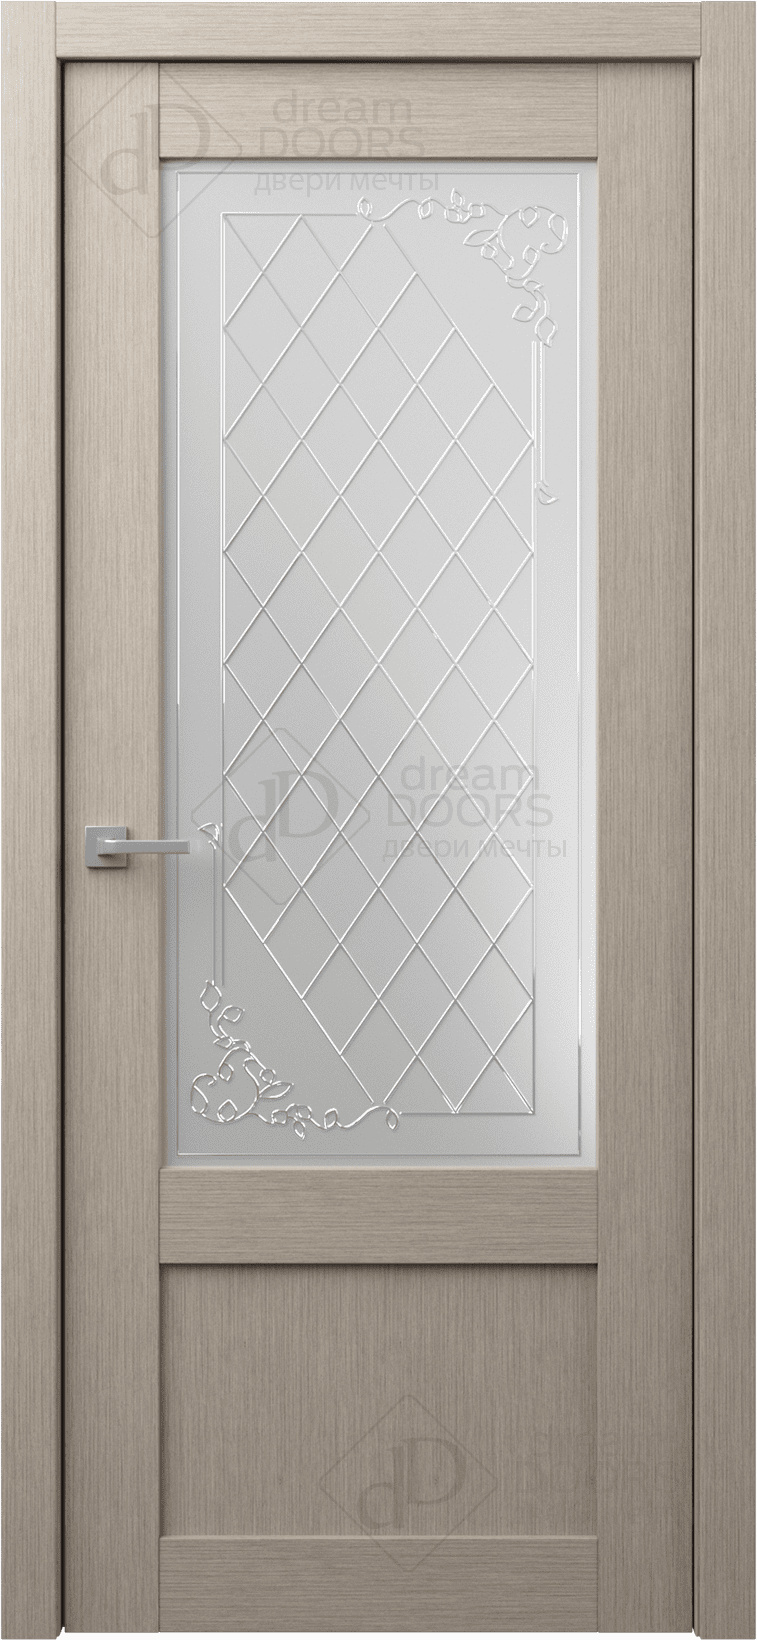 Dream Doors Межкомнатная дверь G26, арт. 18253 - фото №1